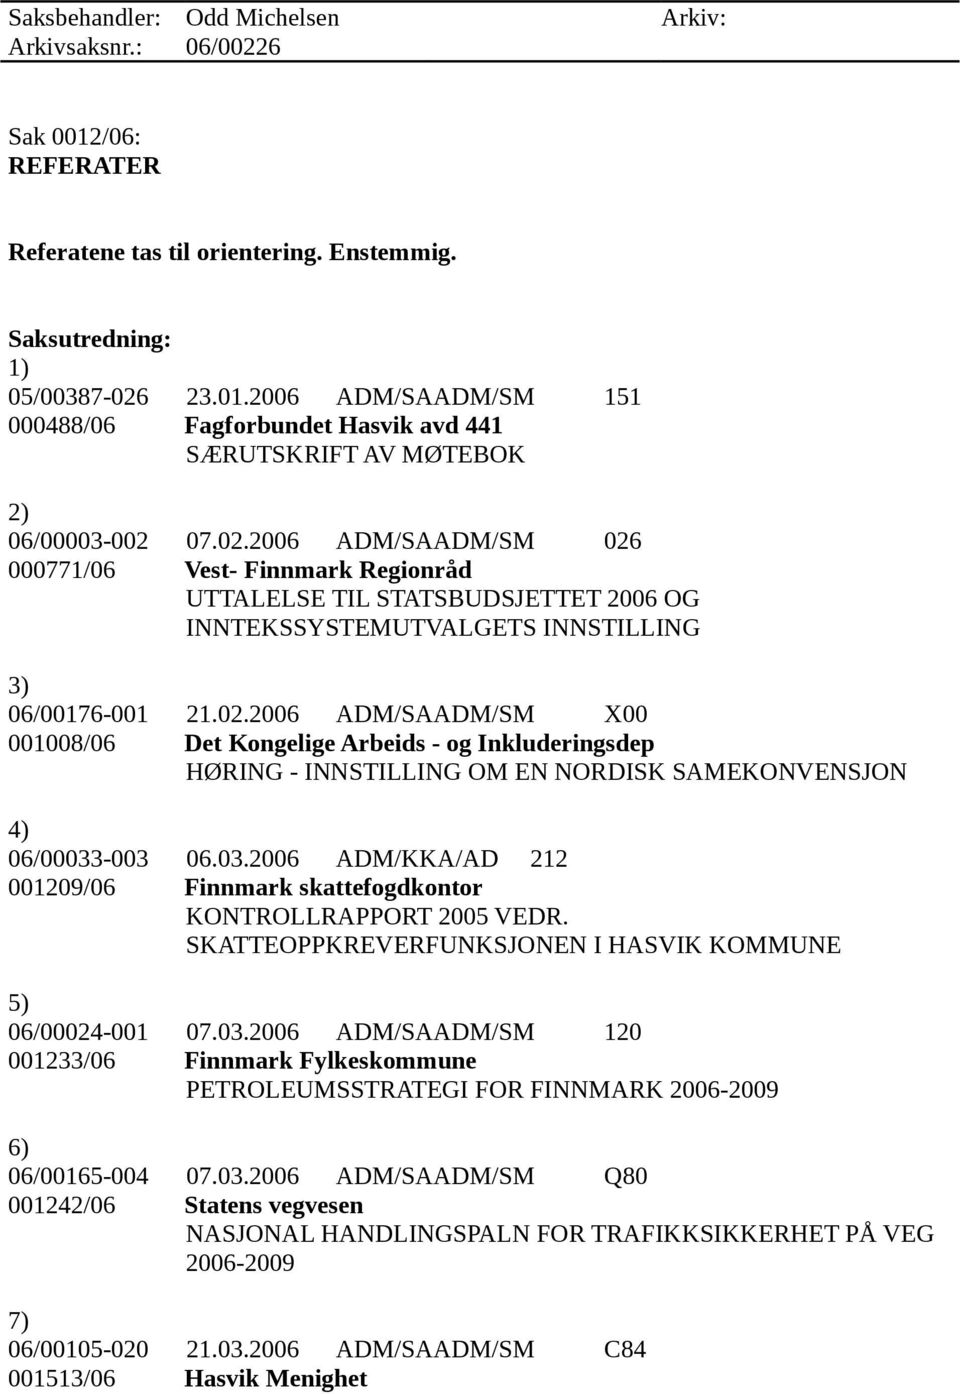 03.2006 ADM/KKA/AD 212 001209/06 Finnmark skattefogdkontor KONTROLLRAPPORT 2005 VEDR. SKATTEOPPKREVERFUNKSJONEN I HASVIK KOMMUNE 5) 06/00024-001 07.03.2006 ADM/SAADM/SM 120 001233/06 Finnmark Fylkeskommune PETROLEUMSSTRATEGI FOR FINNMARK 2006-2009 6) 06/00165-004 07.